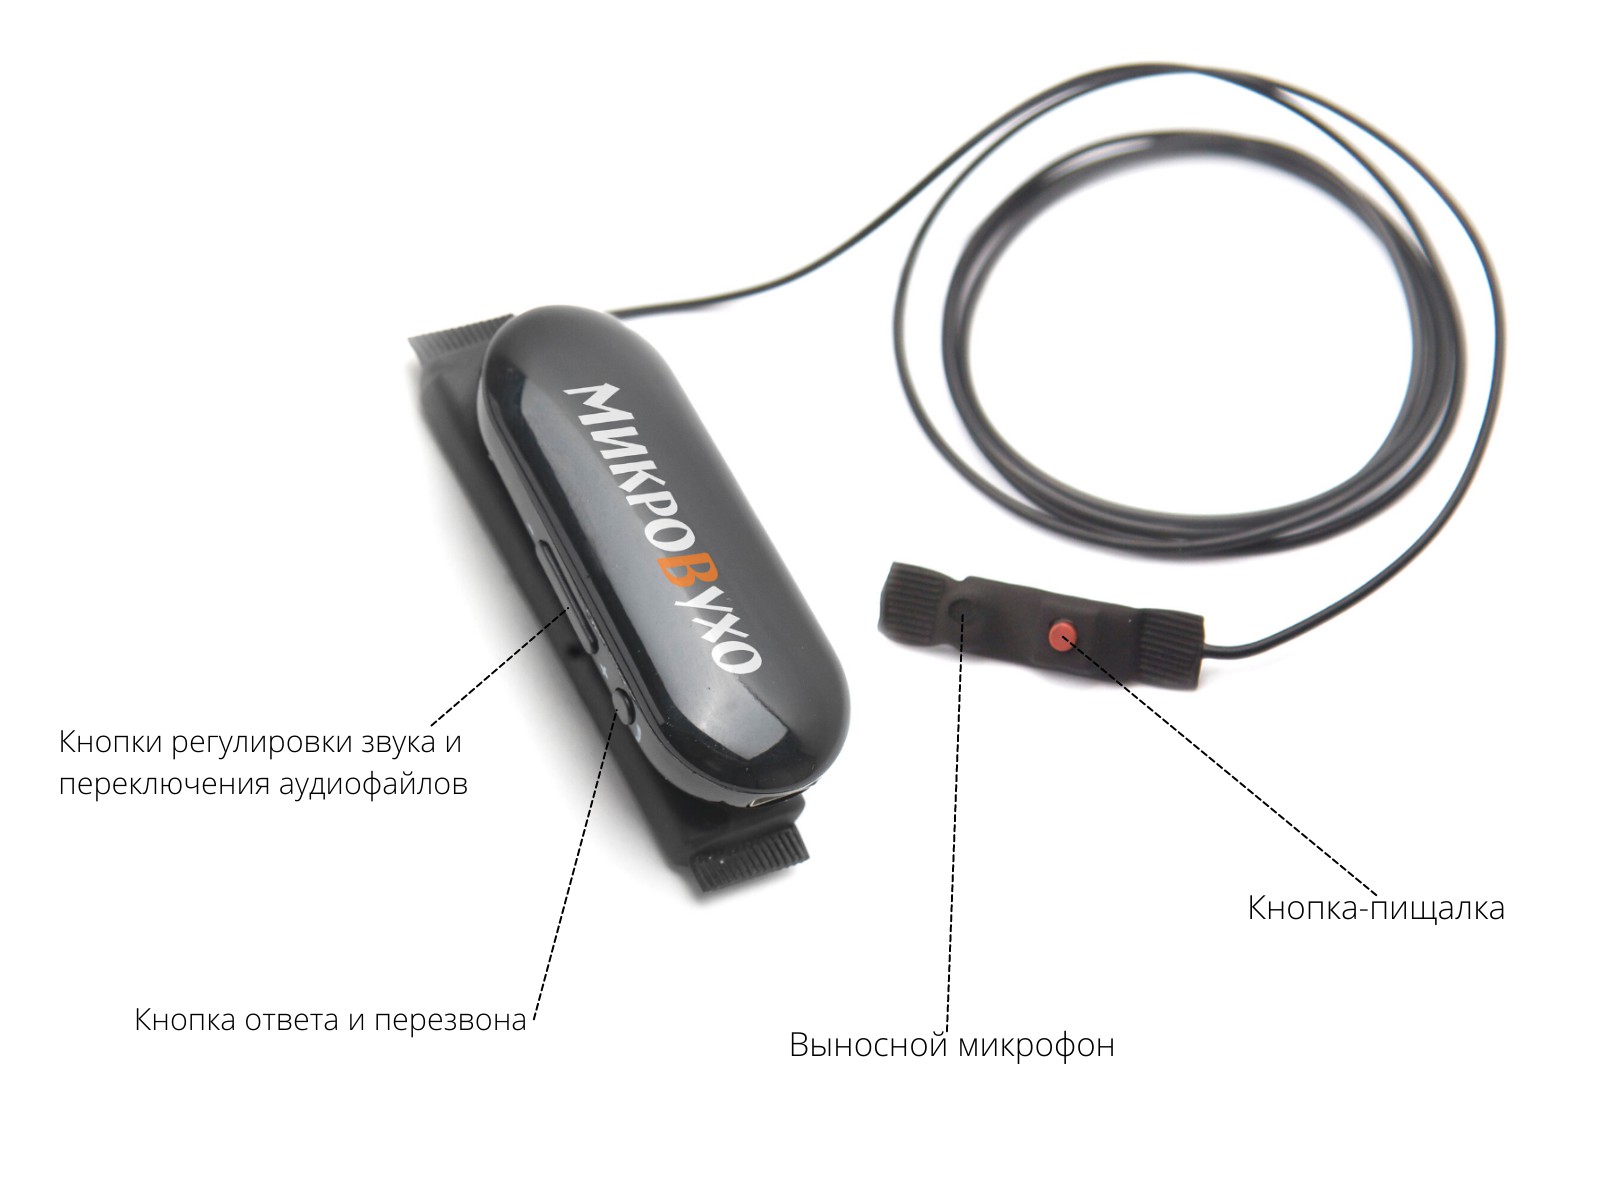 Гарнитура Bluetooth Box PRO Plus c капсульным микронаушником Nano 4 мм - изображение 16